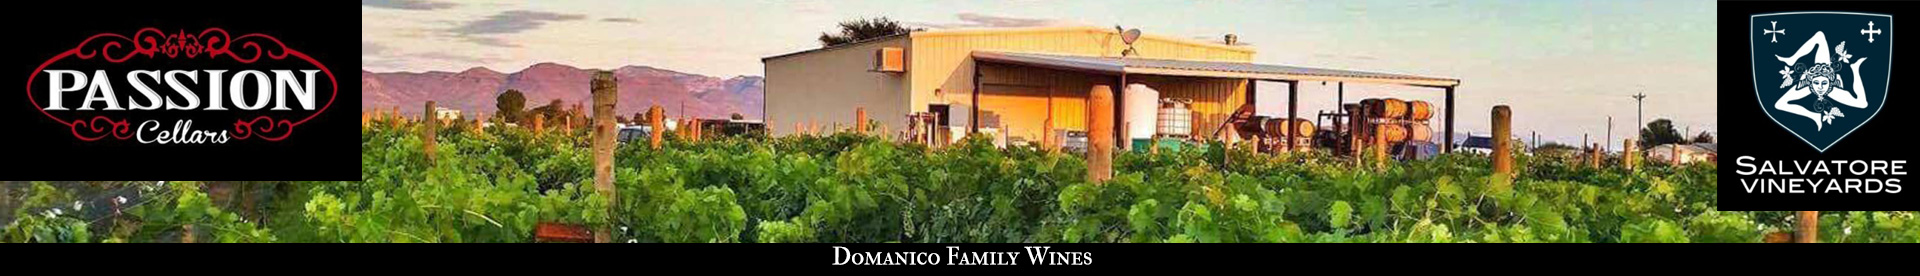 Domanico Family Wines